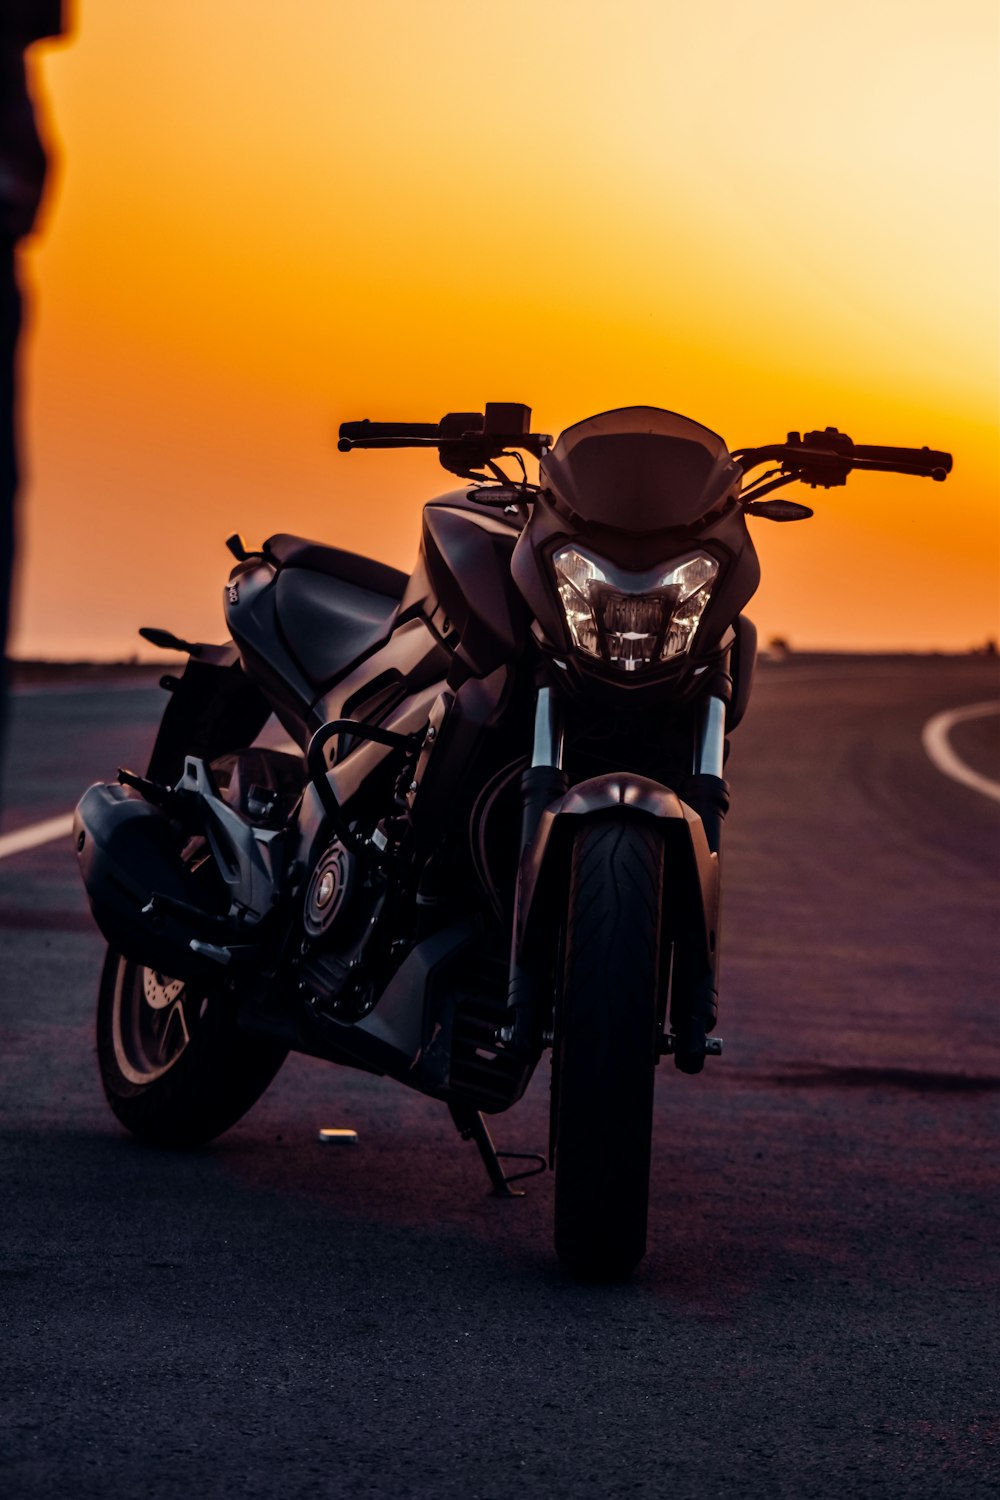 Motocicletta nera sulla strada asfaltata grigia durante il tramonto